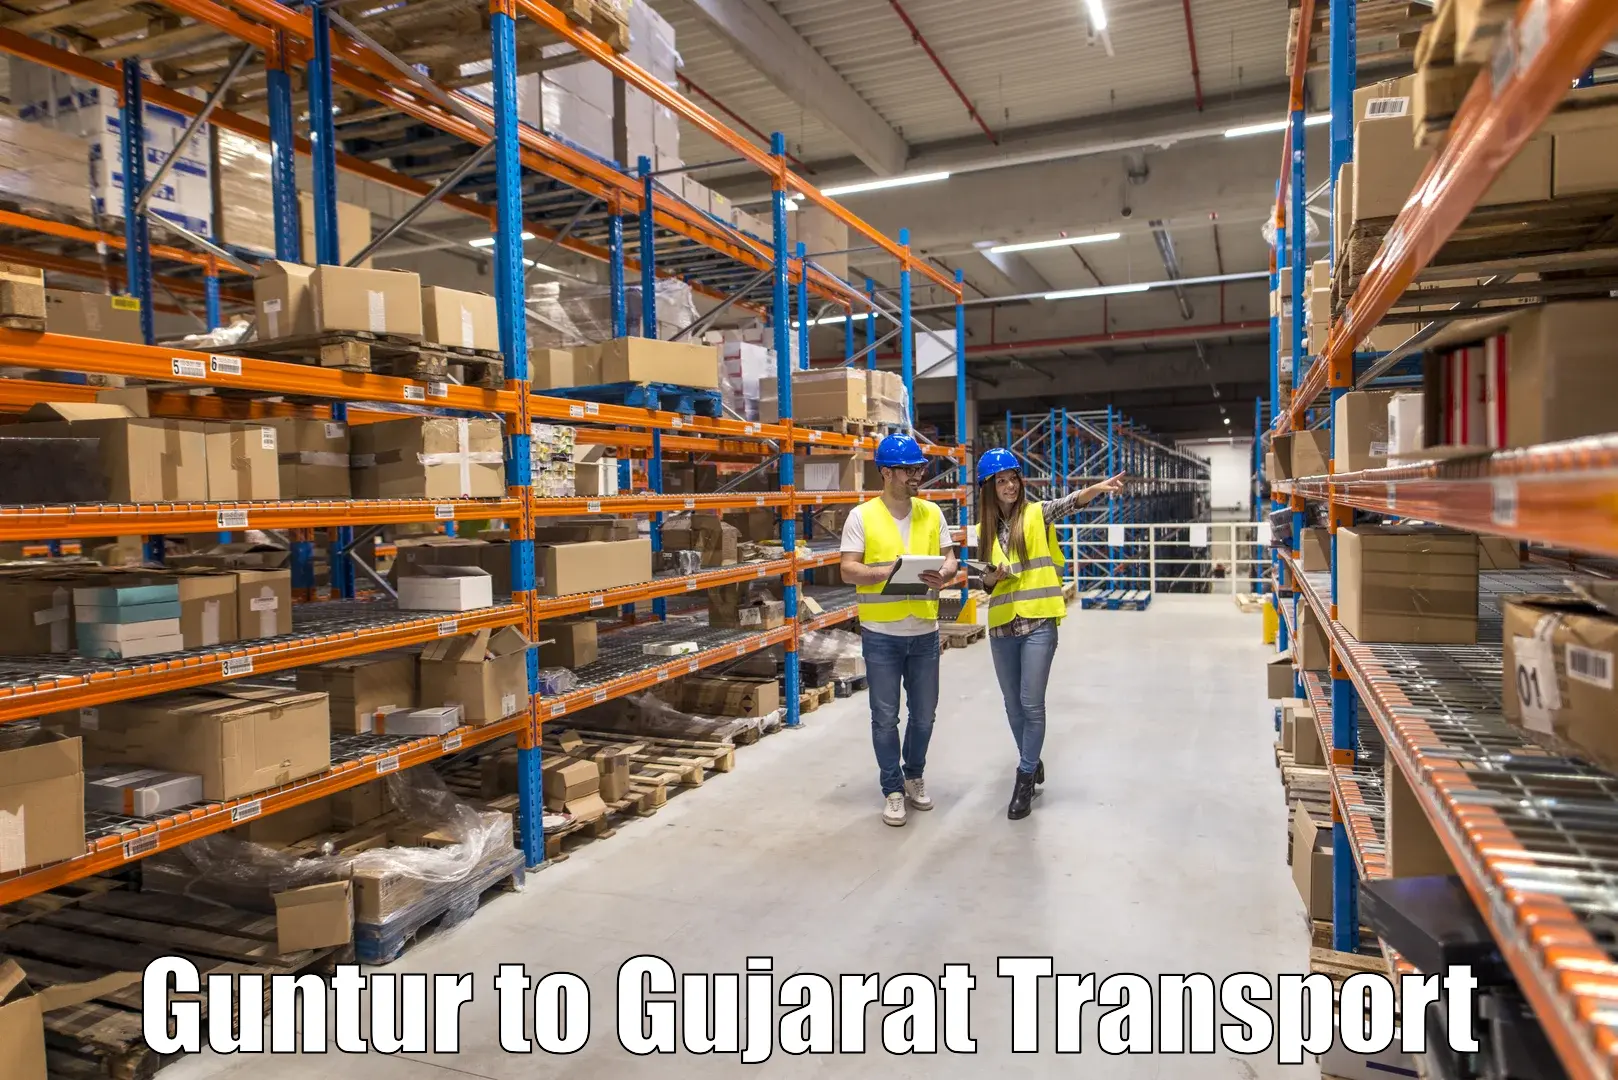 International cargo transportation services Guntur to Prantij